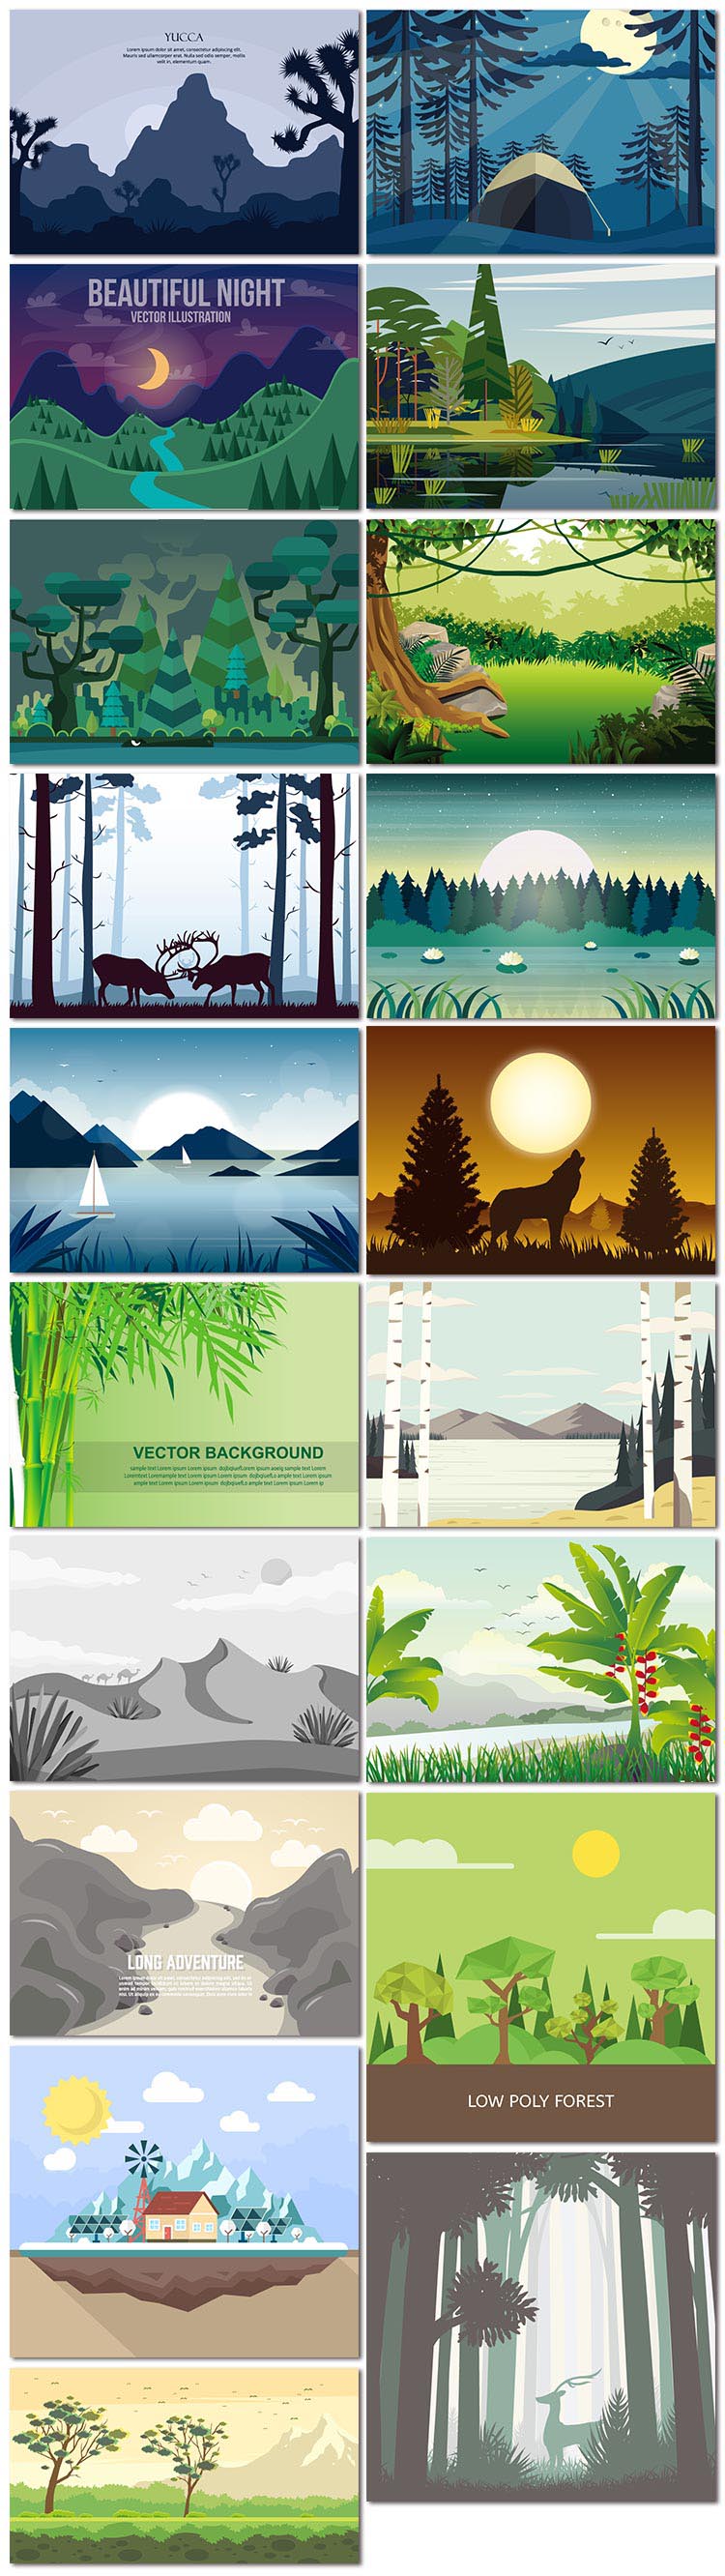 19张大自然风景插画插图山水河流夜晚动物森林旅游度假矢量素材模板